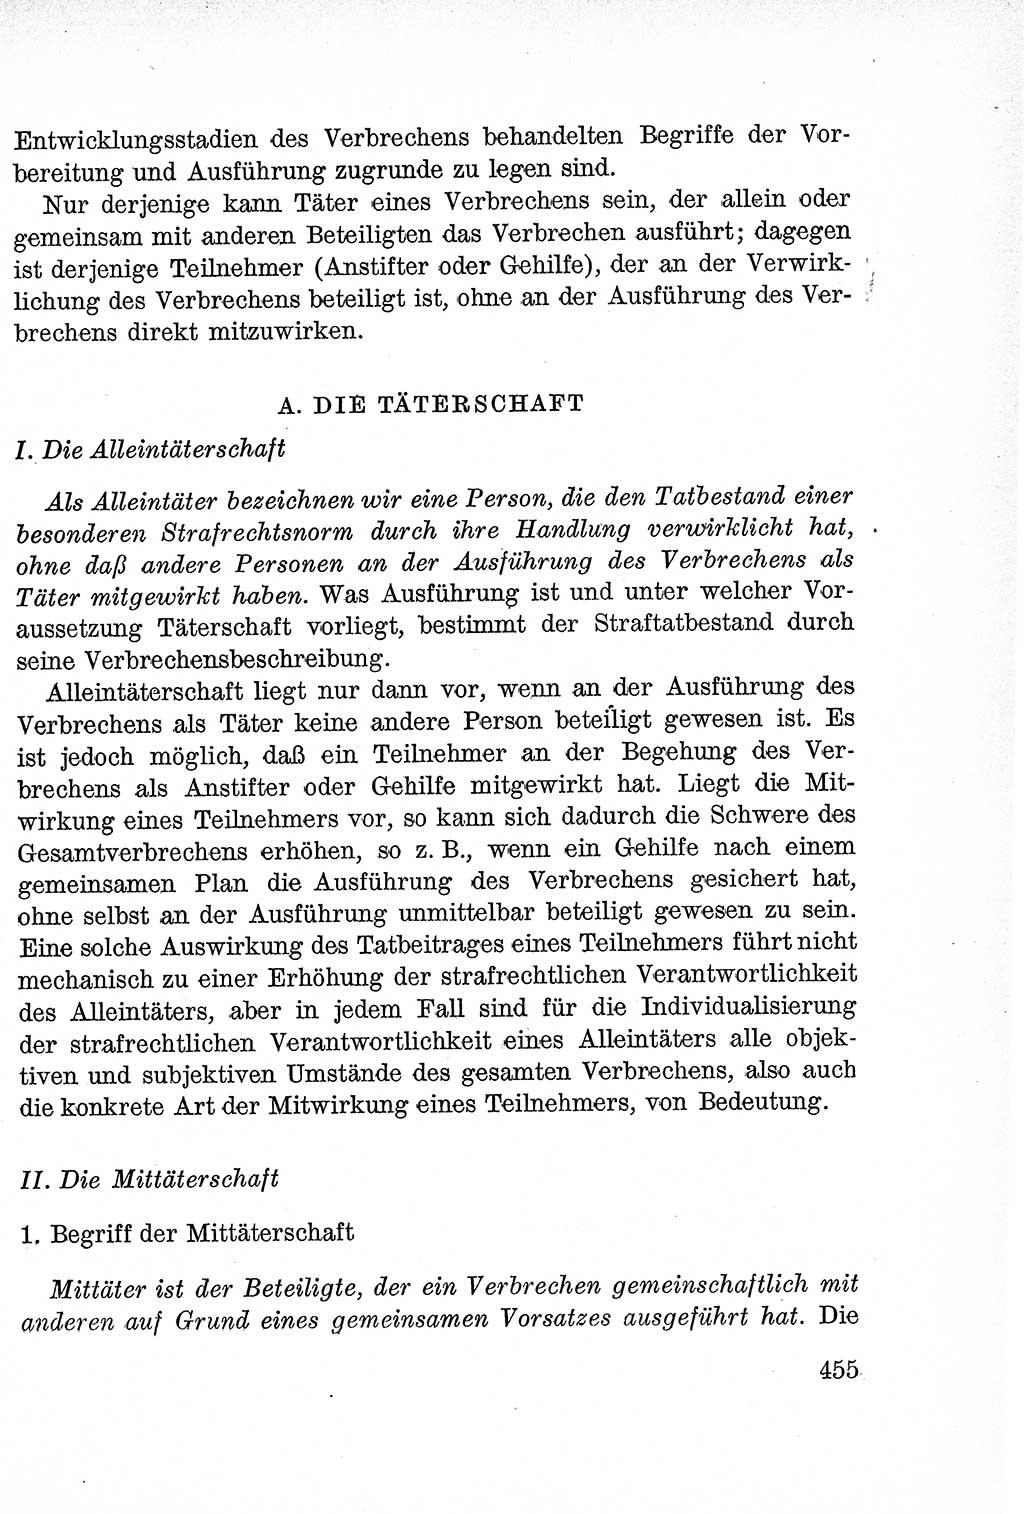 Lehrbuch des Strafrechts der Deutschen Demokratischen Republik (DDR), Allgemeiner Teil 1957, Seite 455 (Lb. Strafr. DDR AT 1957, S. 455)